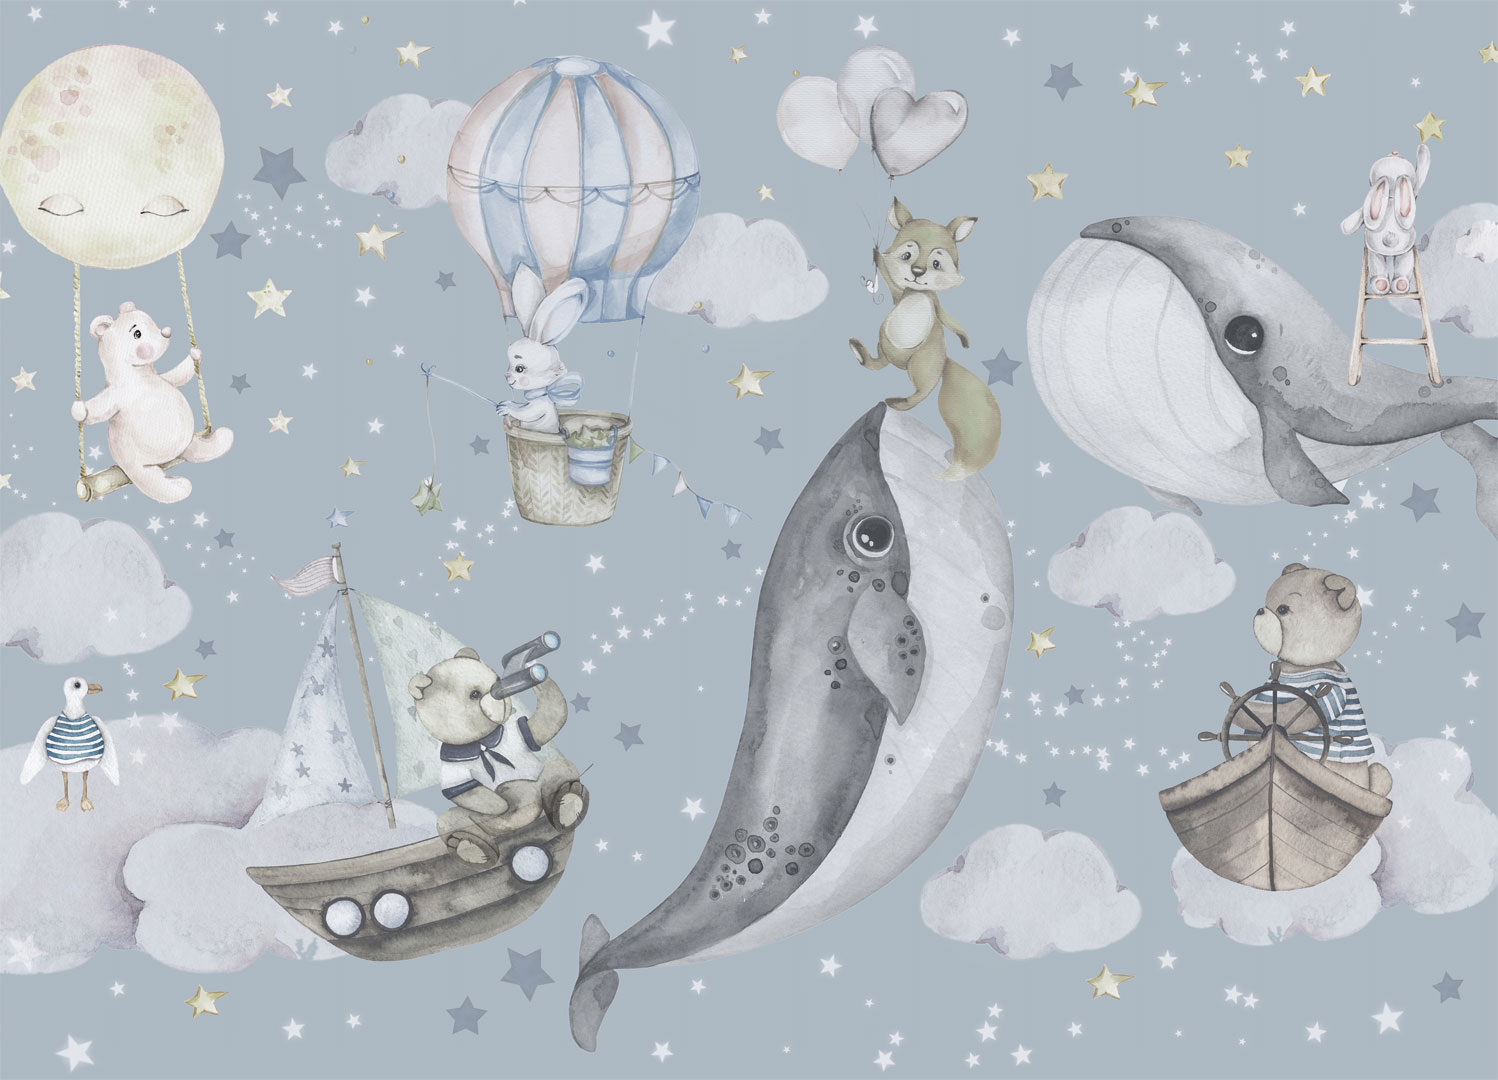 Tapeta dla dzieci, chłopca lub dziewczynki, z wielorybami i zwierzętami w chmurach, POLOWANIE NA GWIAZDY - Dekoori zdjęcie 1